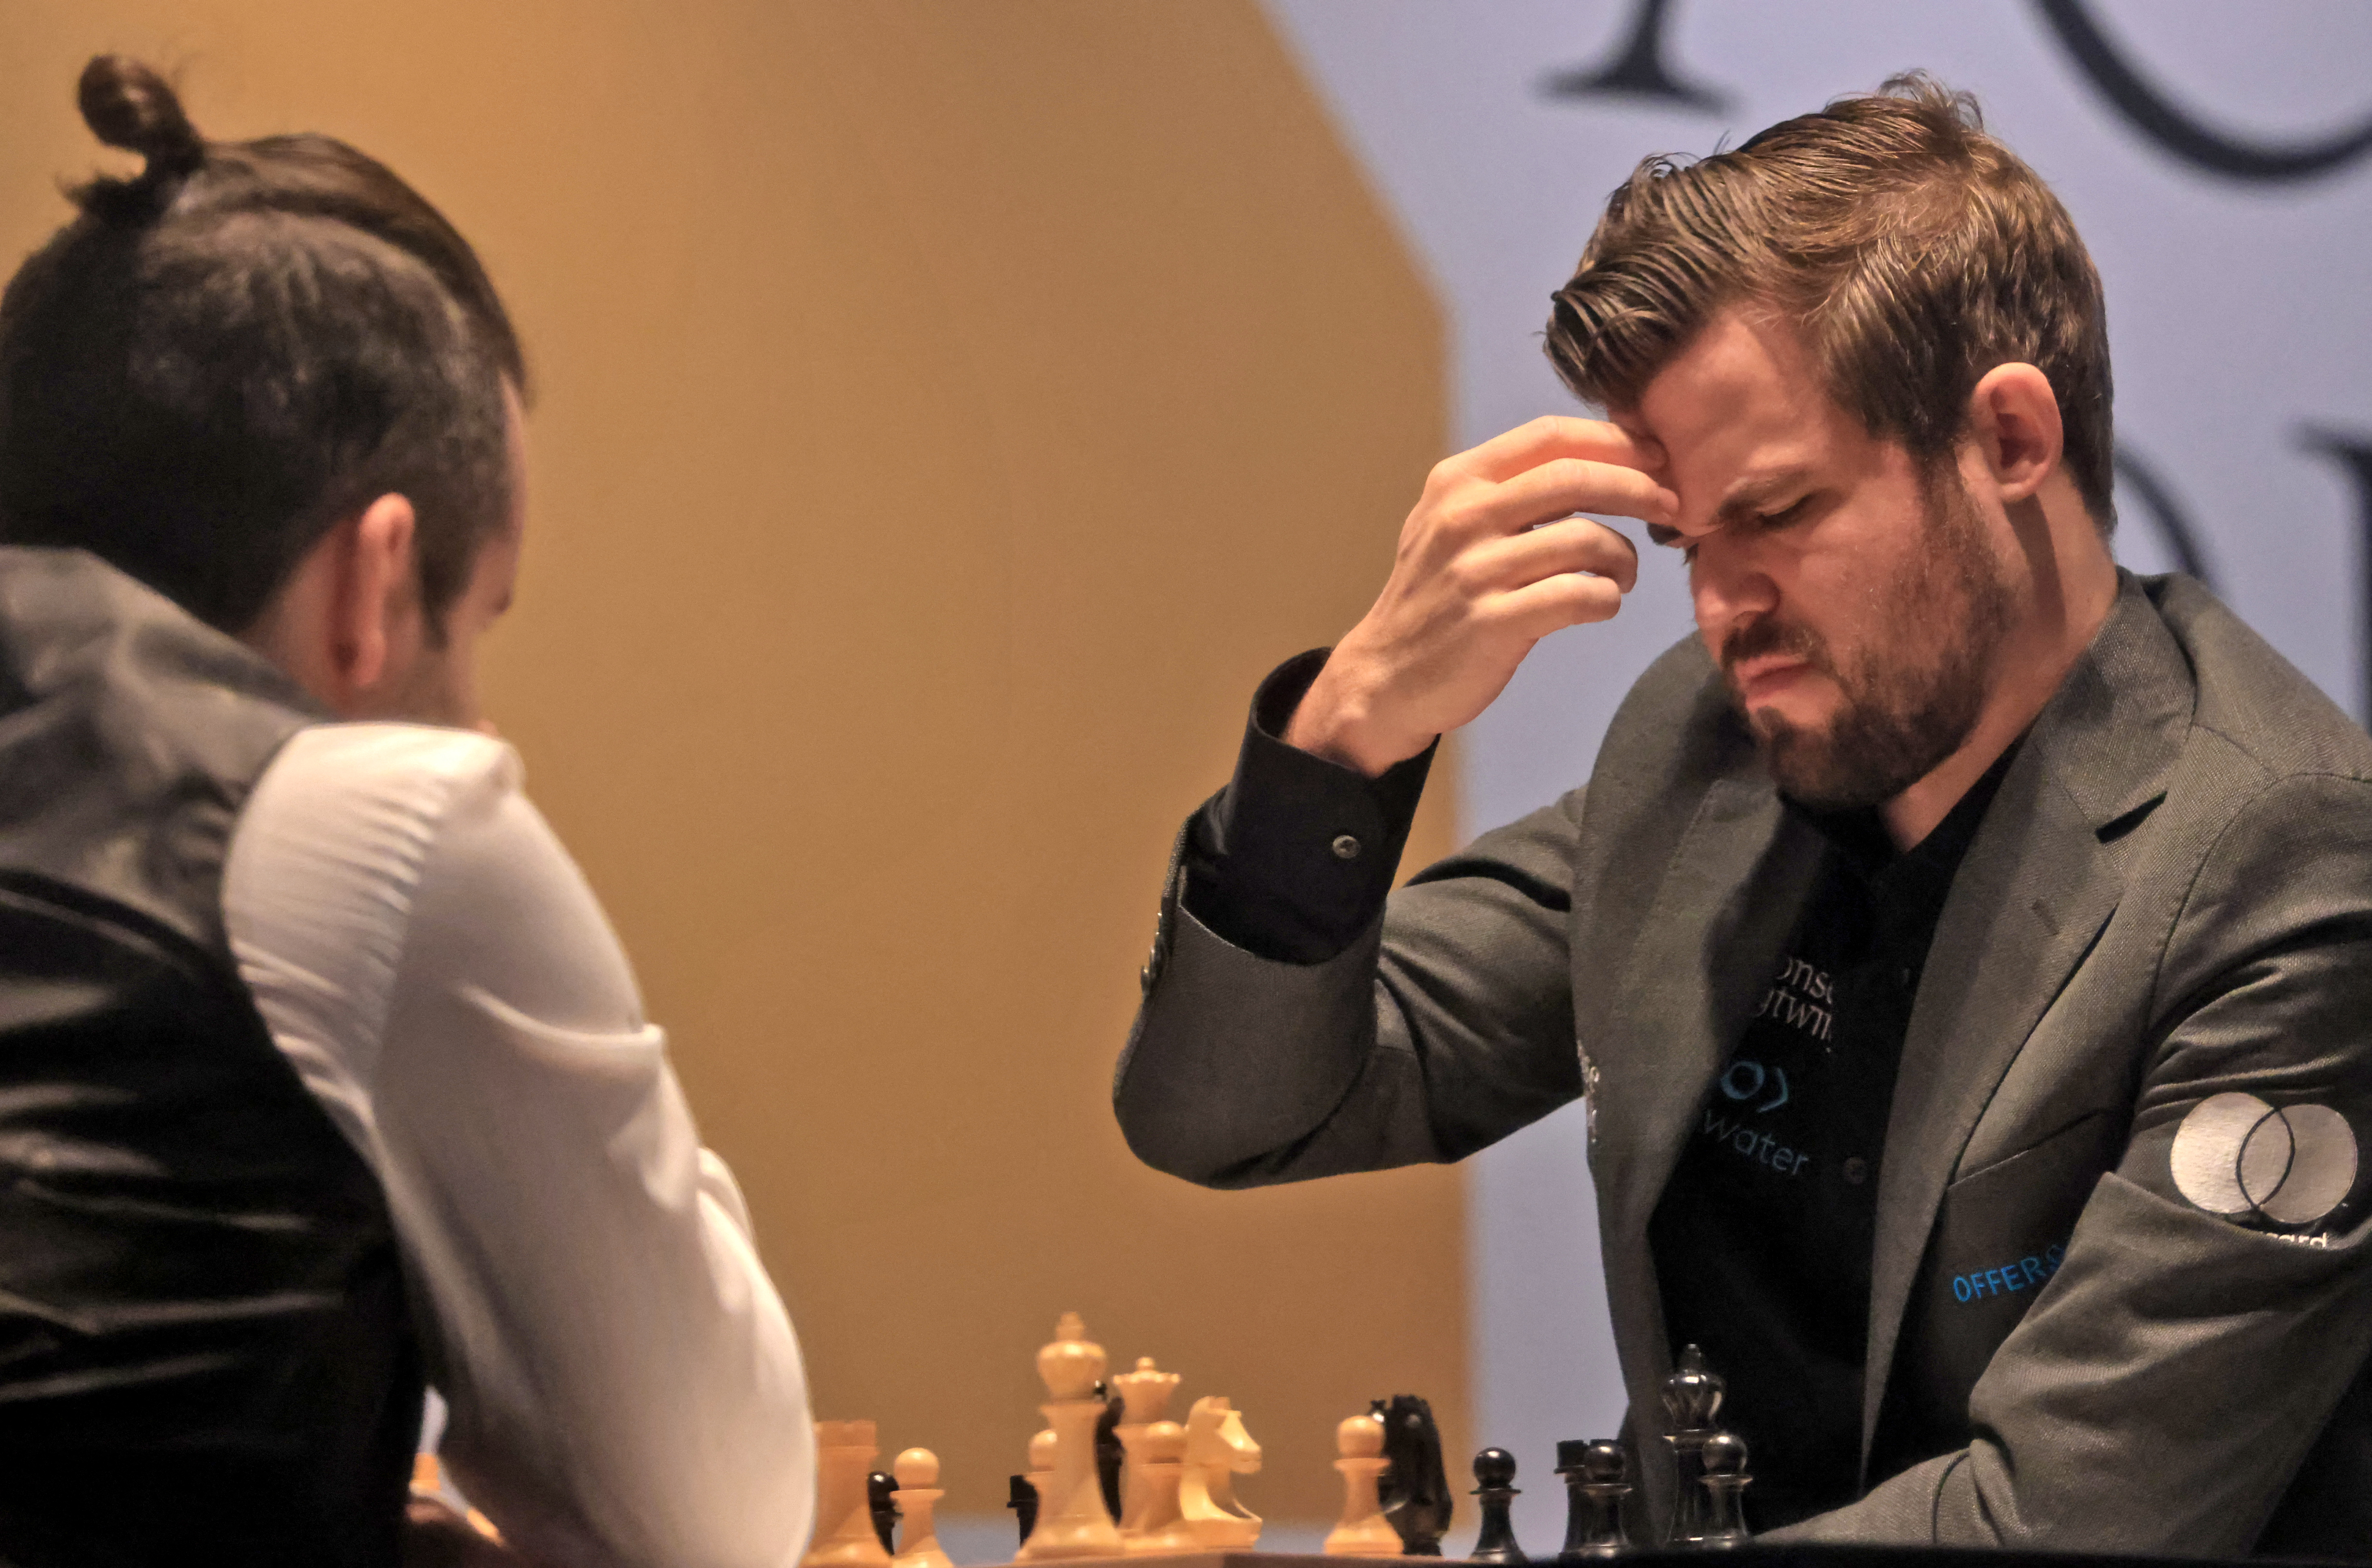 Egyre népszerűbbé és egyre inkább e-sporttá válik a sakk, a most zajló vb-döntő az egész sportág sorsát befolyásolja